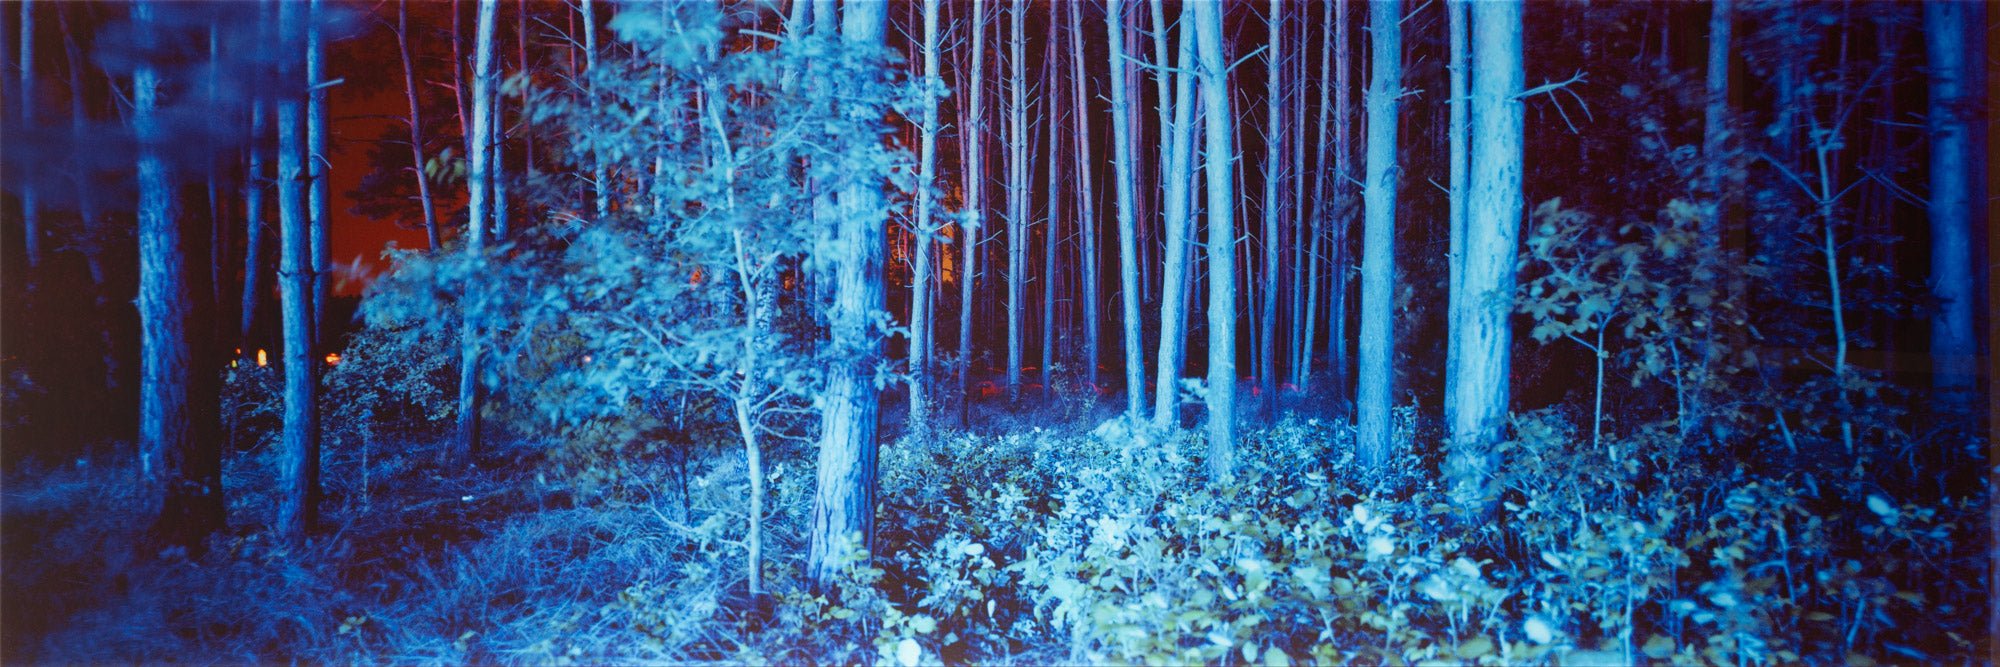 BLUE FOREST, DEUTSCHLAND